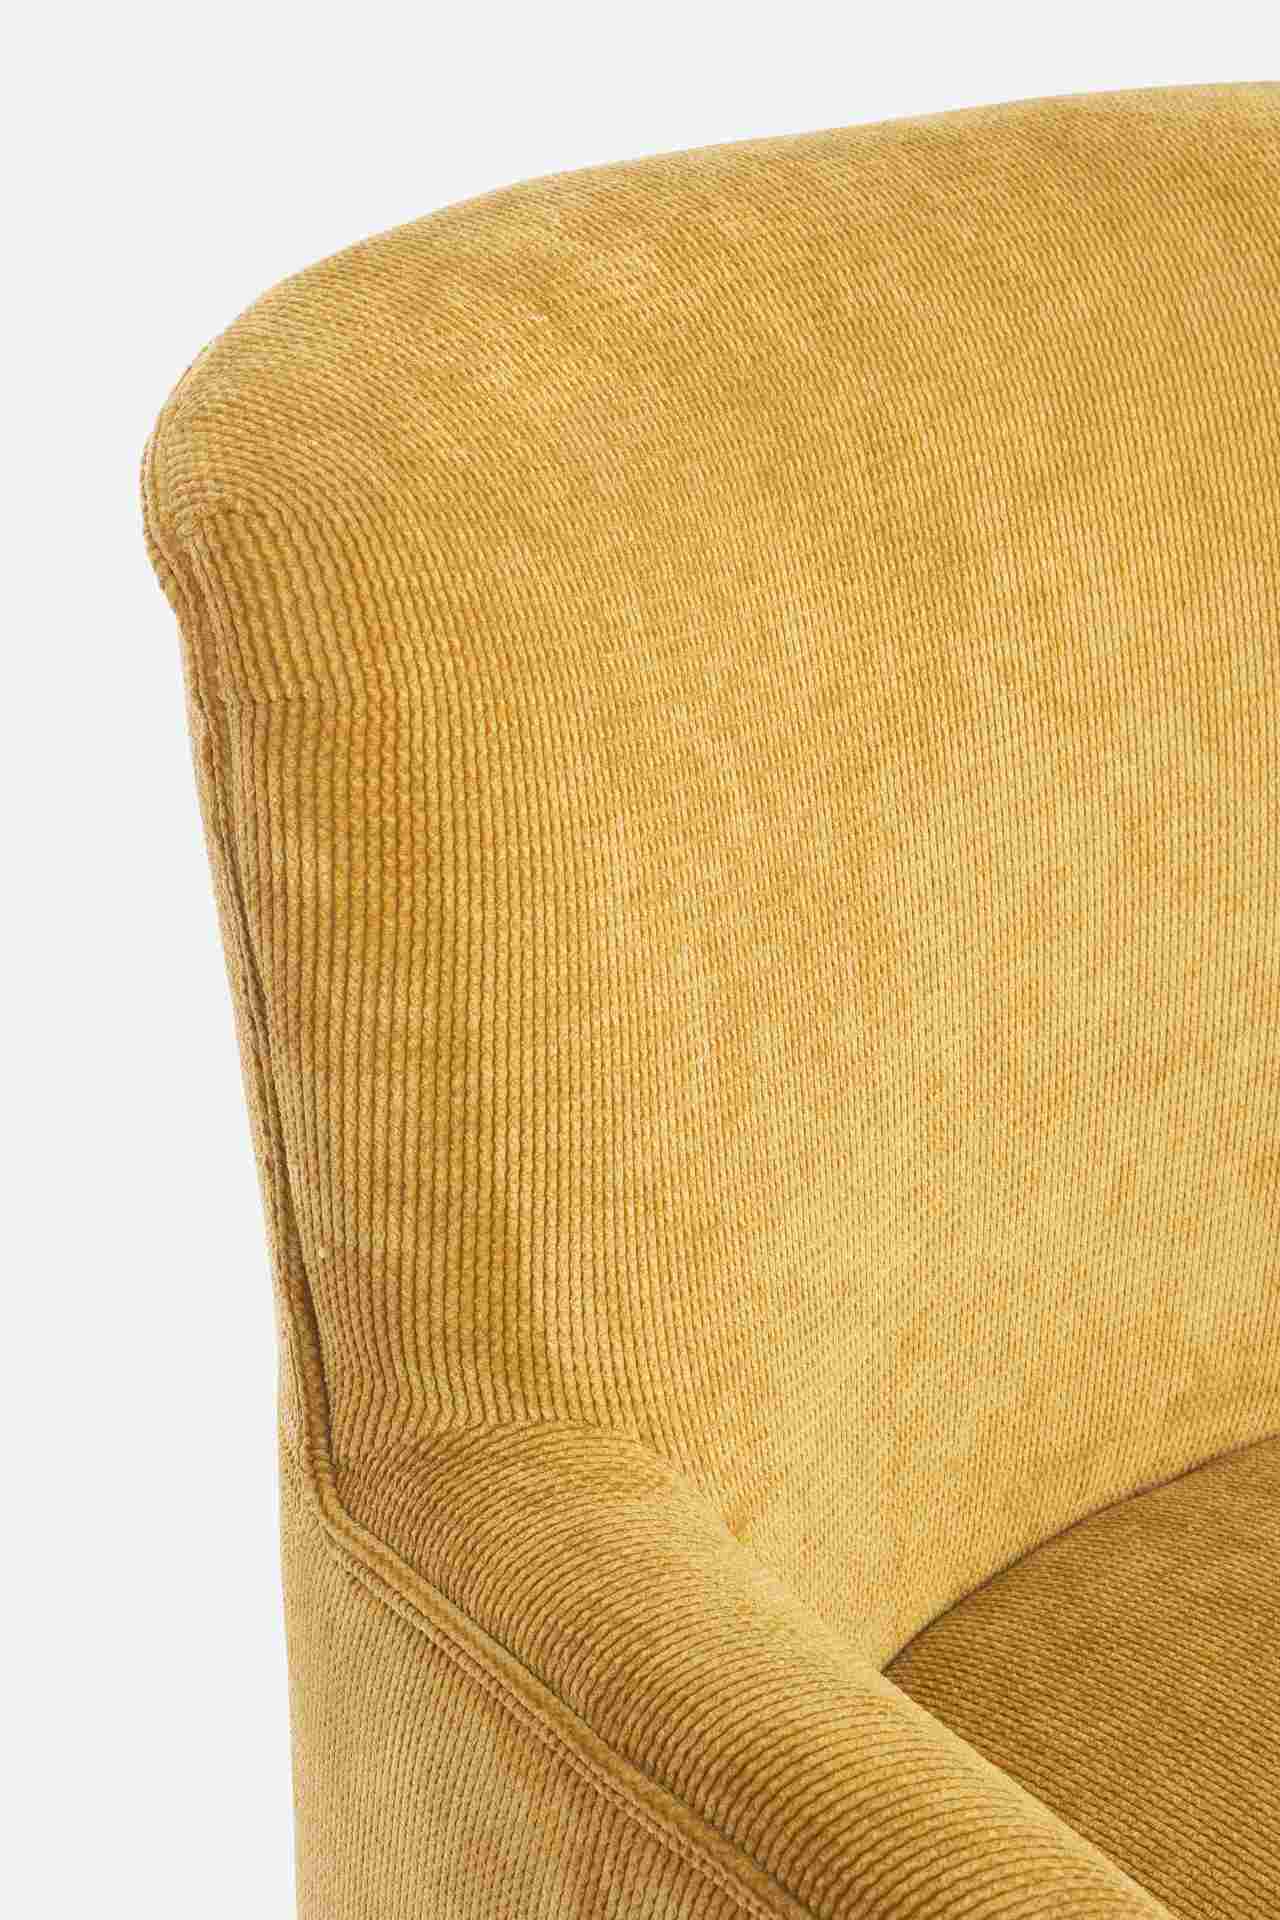 Der Sessel Chenille überzeugt mit seinem klassischen Design. Gefertigt wurde er aus Stoff in Cord-Optik, welcher einen gelben Farbton besitzt. Das Gestell ist aus Kautschukholz und hat eine natürliche Farbe. Der Sessel besitzt eine Sitzhöhe von 45 cm. Die